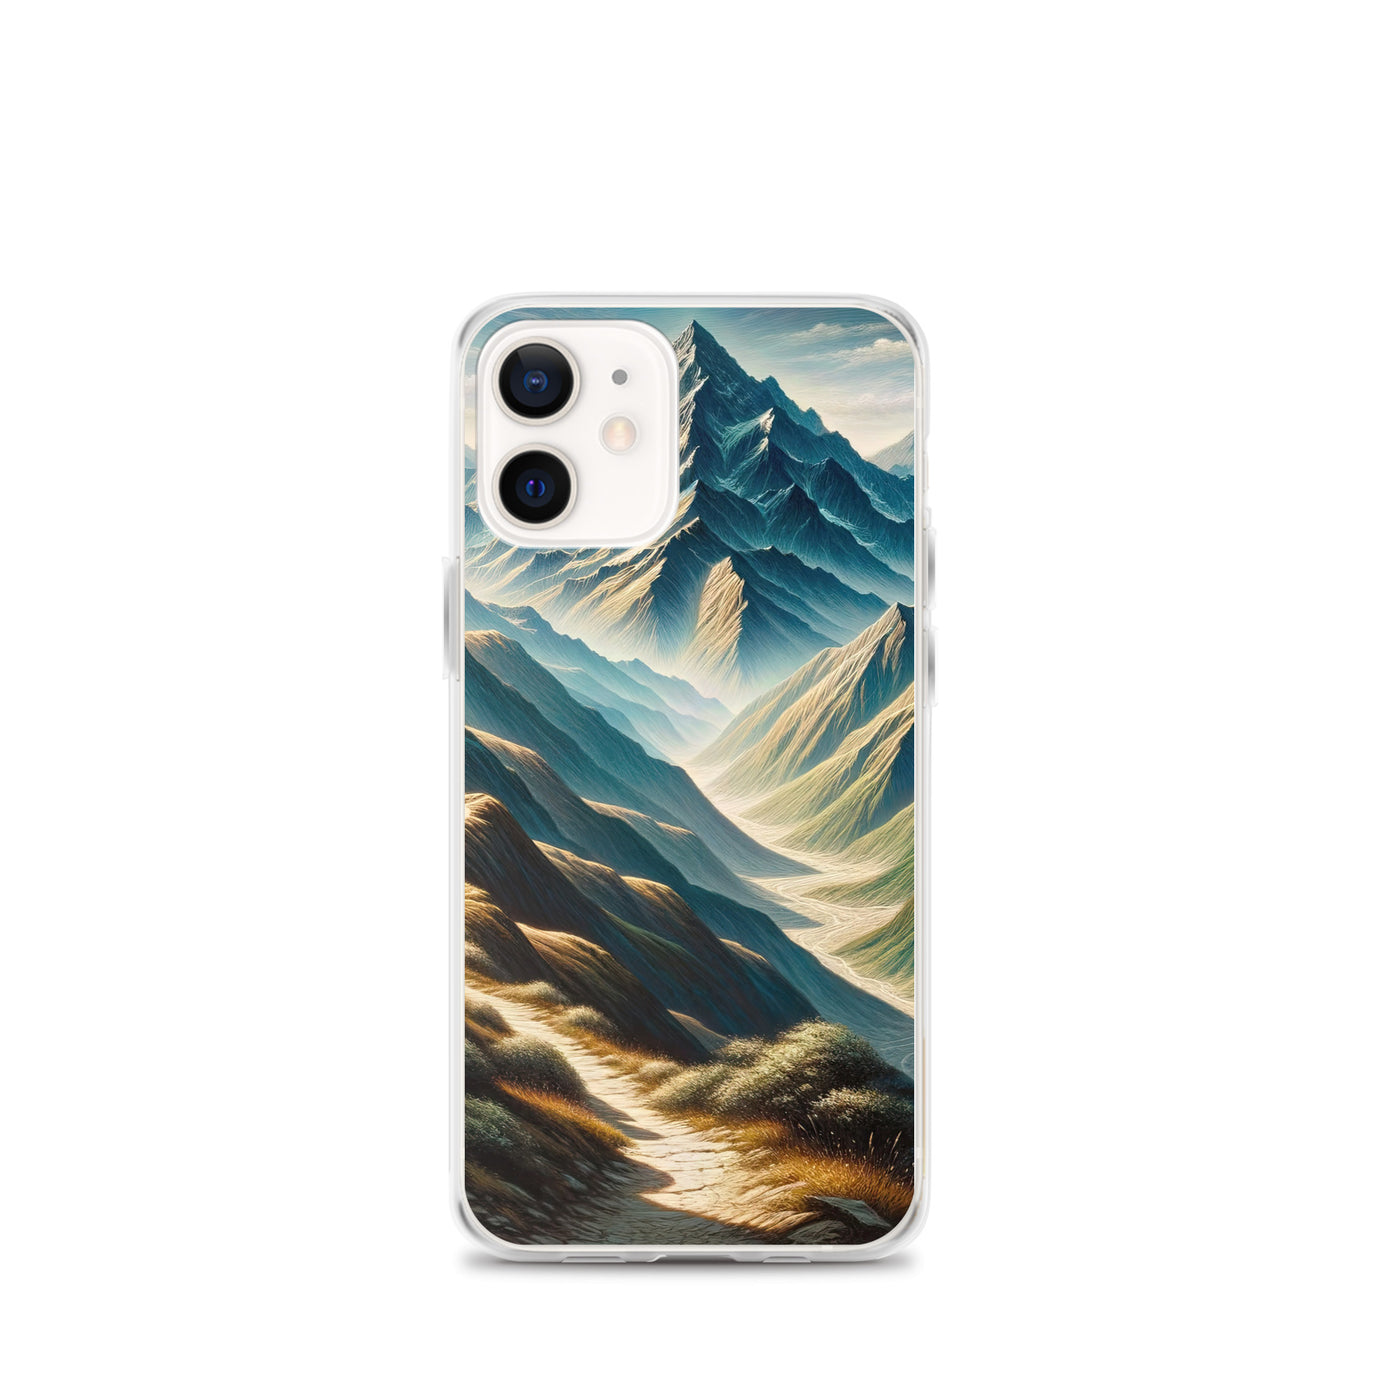 Berglandschaft: Acrylgemälde mit hervorgehobenem Pfad - iPhone Schutzhülle (durchsichtig) berge xxx yyy zzz iPhone 12 mini